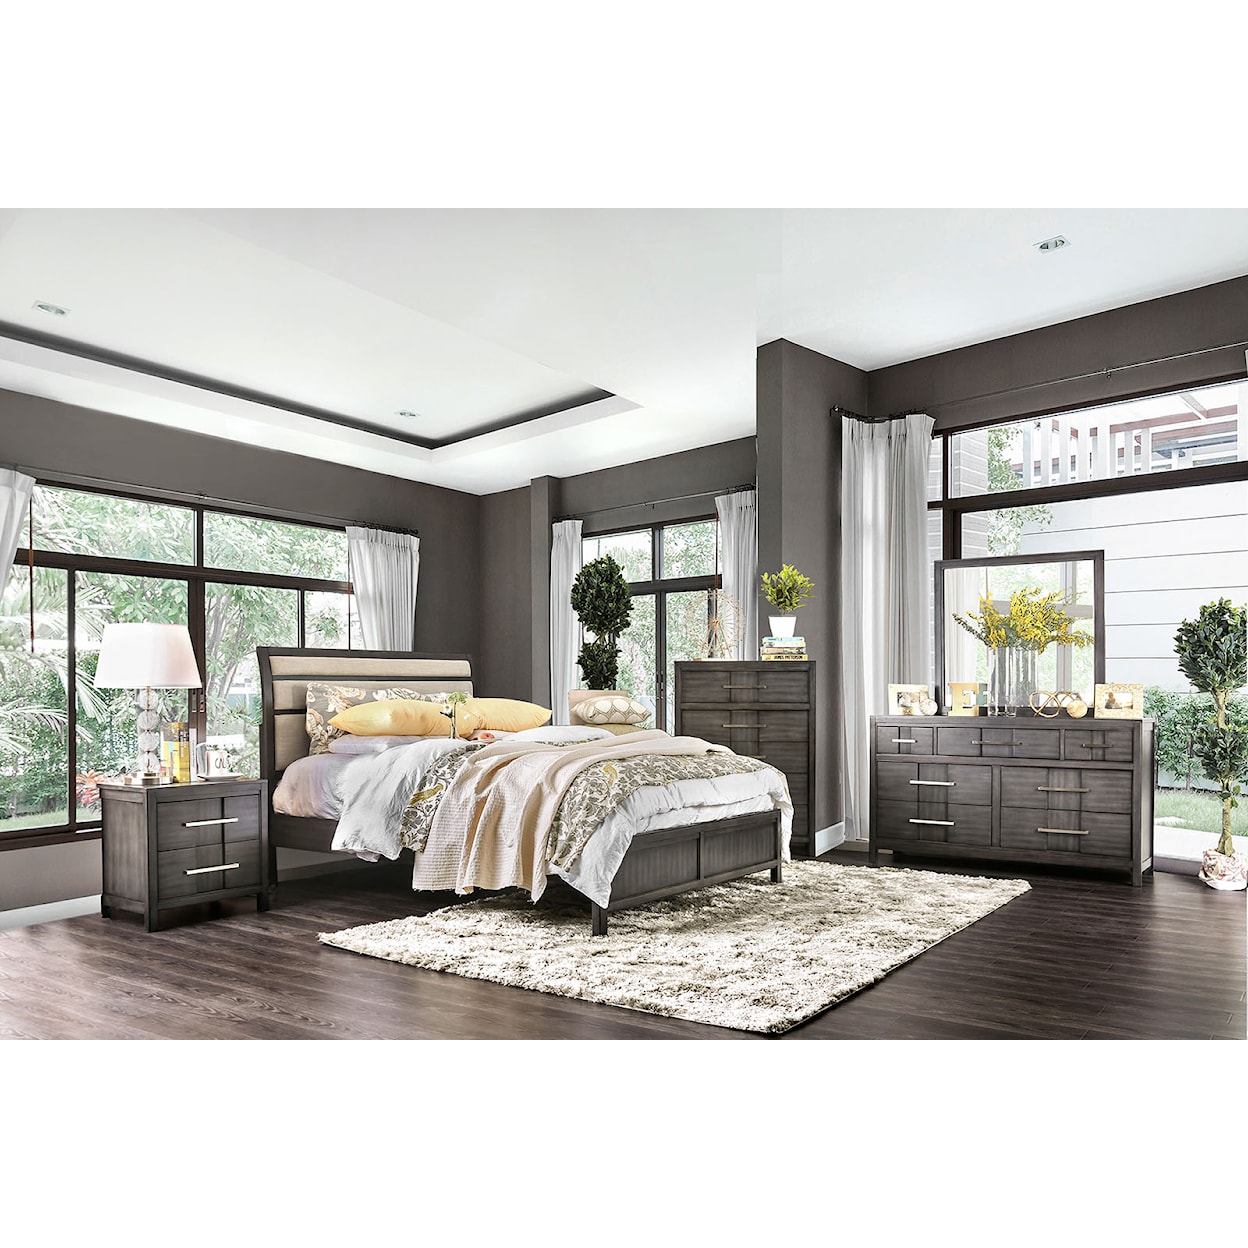 Furniture of America Berenice 5-Piece Queen Bedroom Set